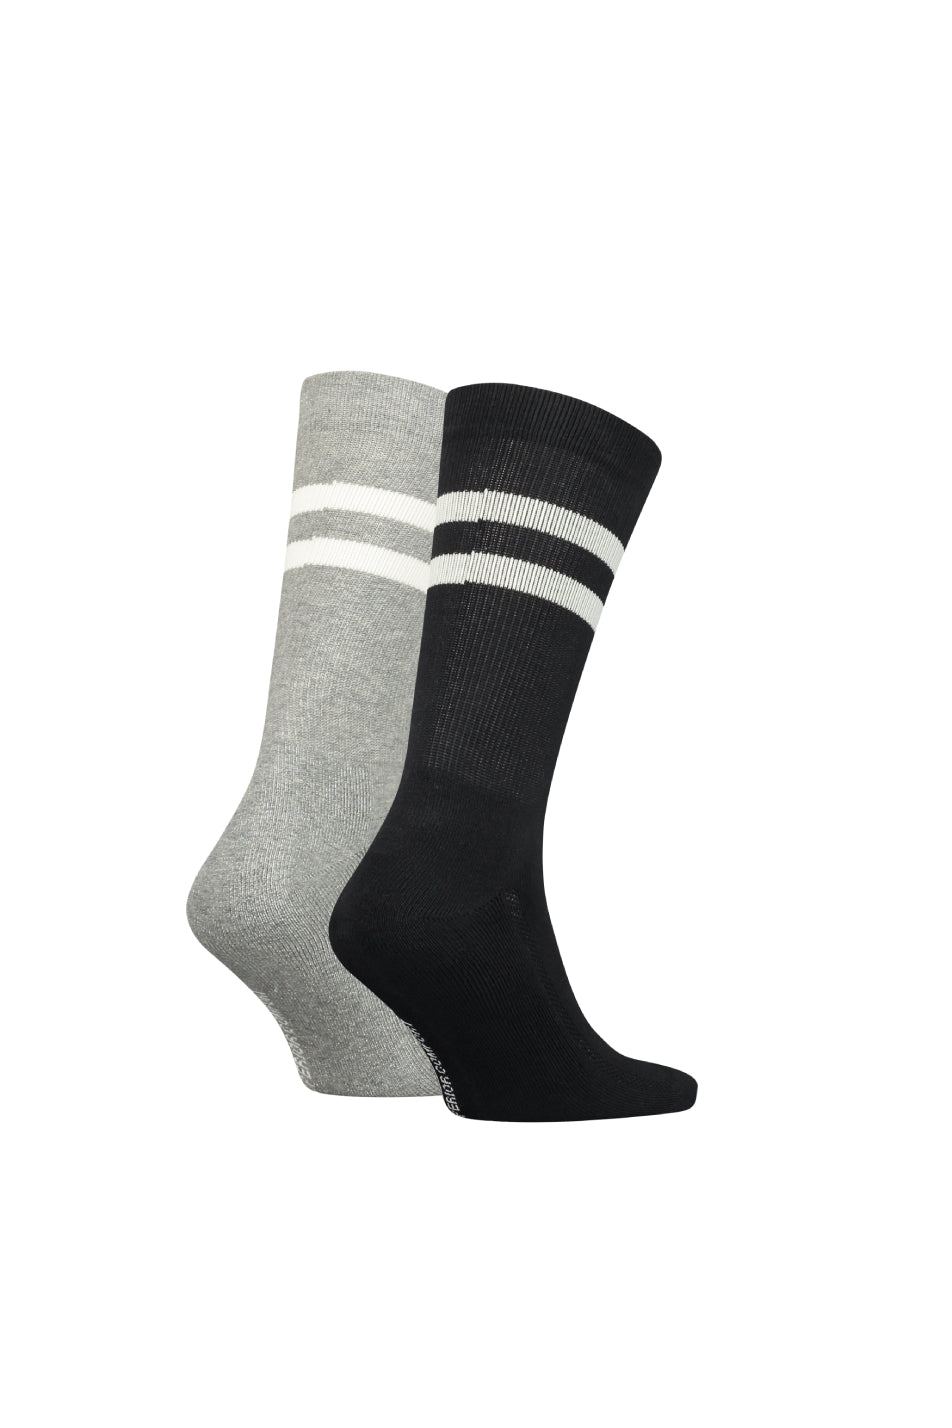 Levi's 2 Pack Unisex Regular Cut Sport Socks